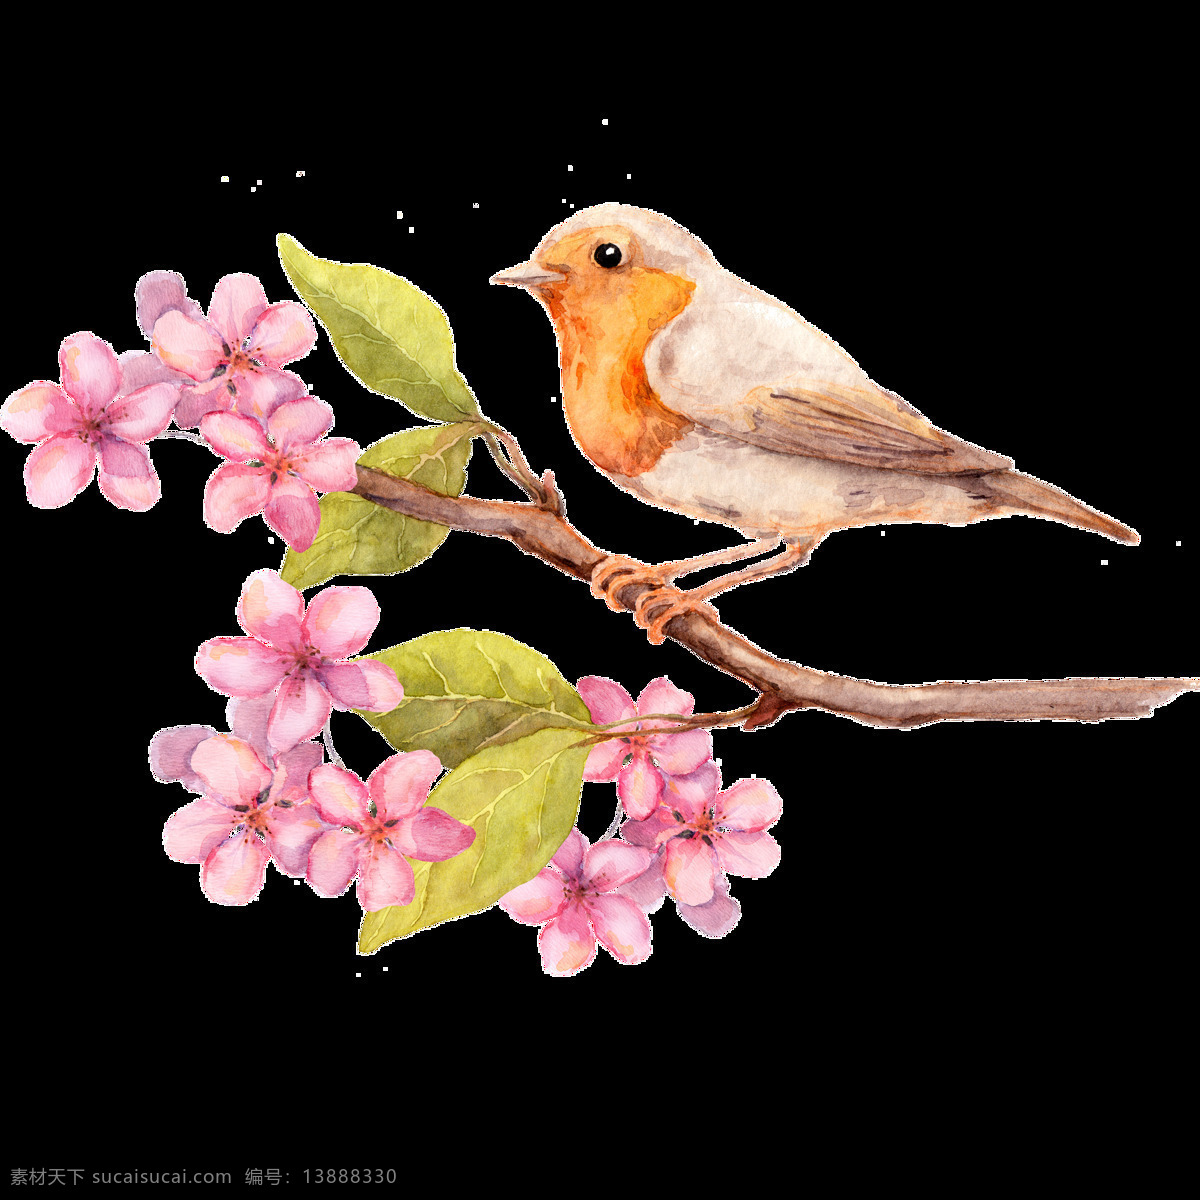 唯美 静态 鸟儿 绘画 粉色花朵 灵动的鸟儿 生动 形象 写实